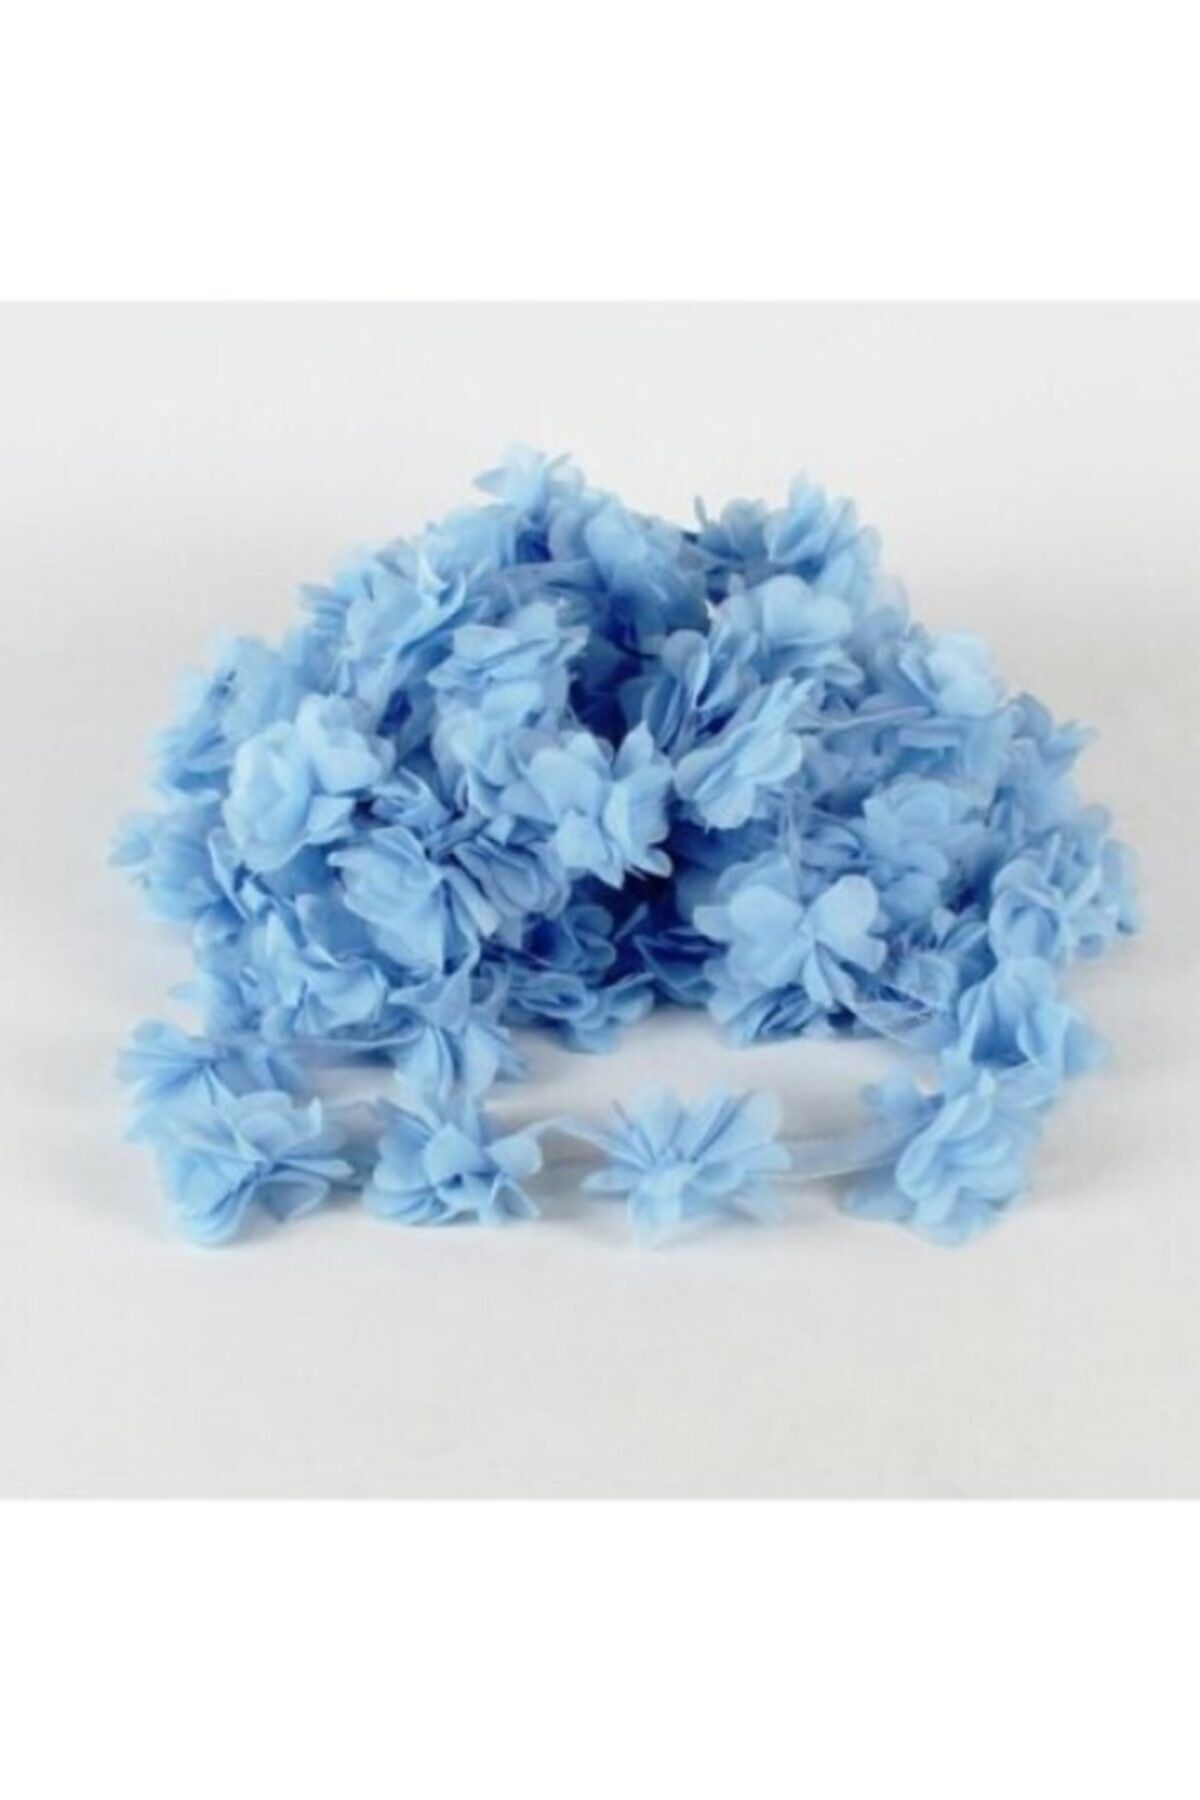 Aker Hediyelik Bebe Mavi Lazer Gül 1m Lazer Kesim Gül Süsleme Paketleme 12 Adet Organze Kumaş Yapay Çiçekler